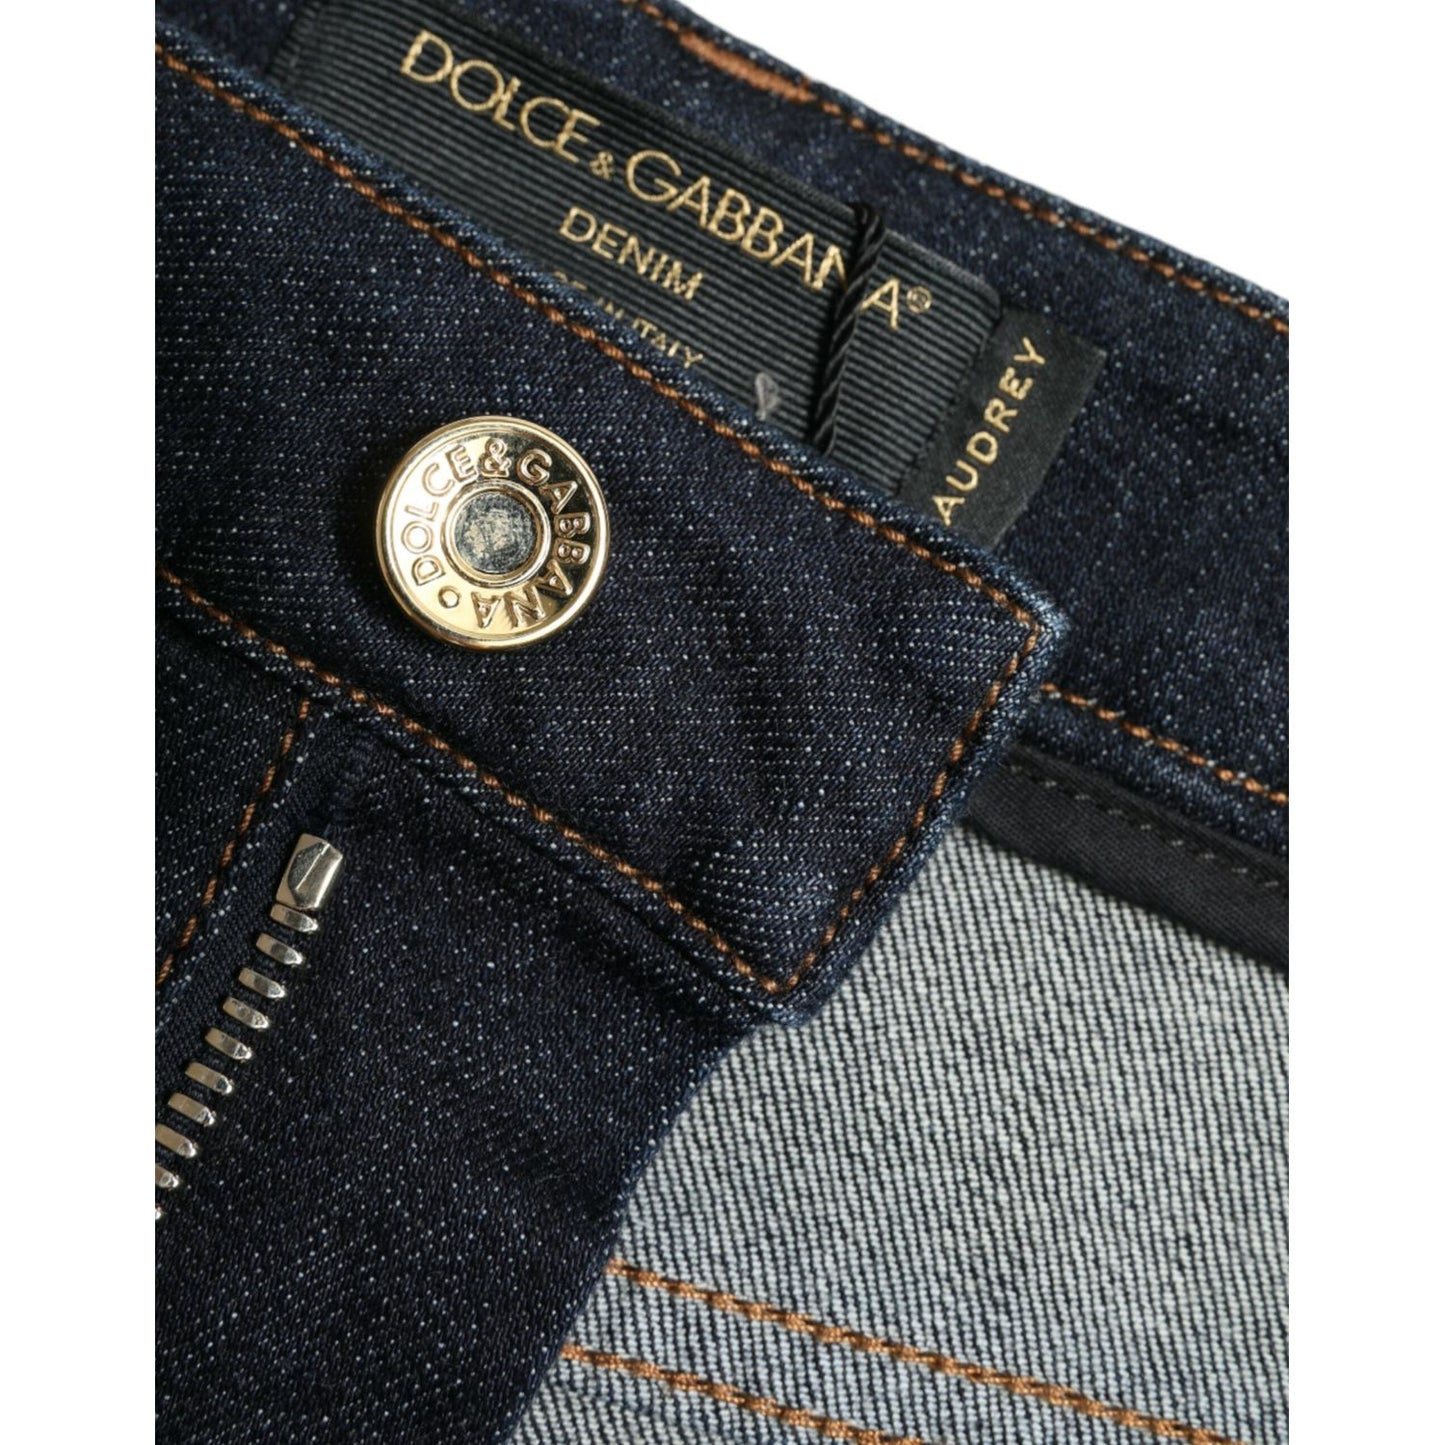 Dolce & Gabbana Sleek Mid-Waist Stretch Denim Jeans blue-cotton-stretch-denim-skinny-jeans